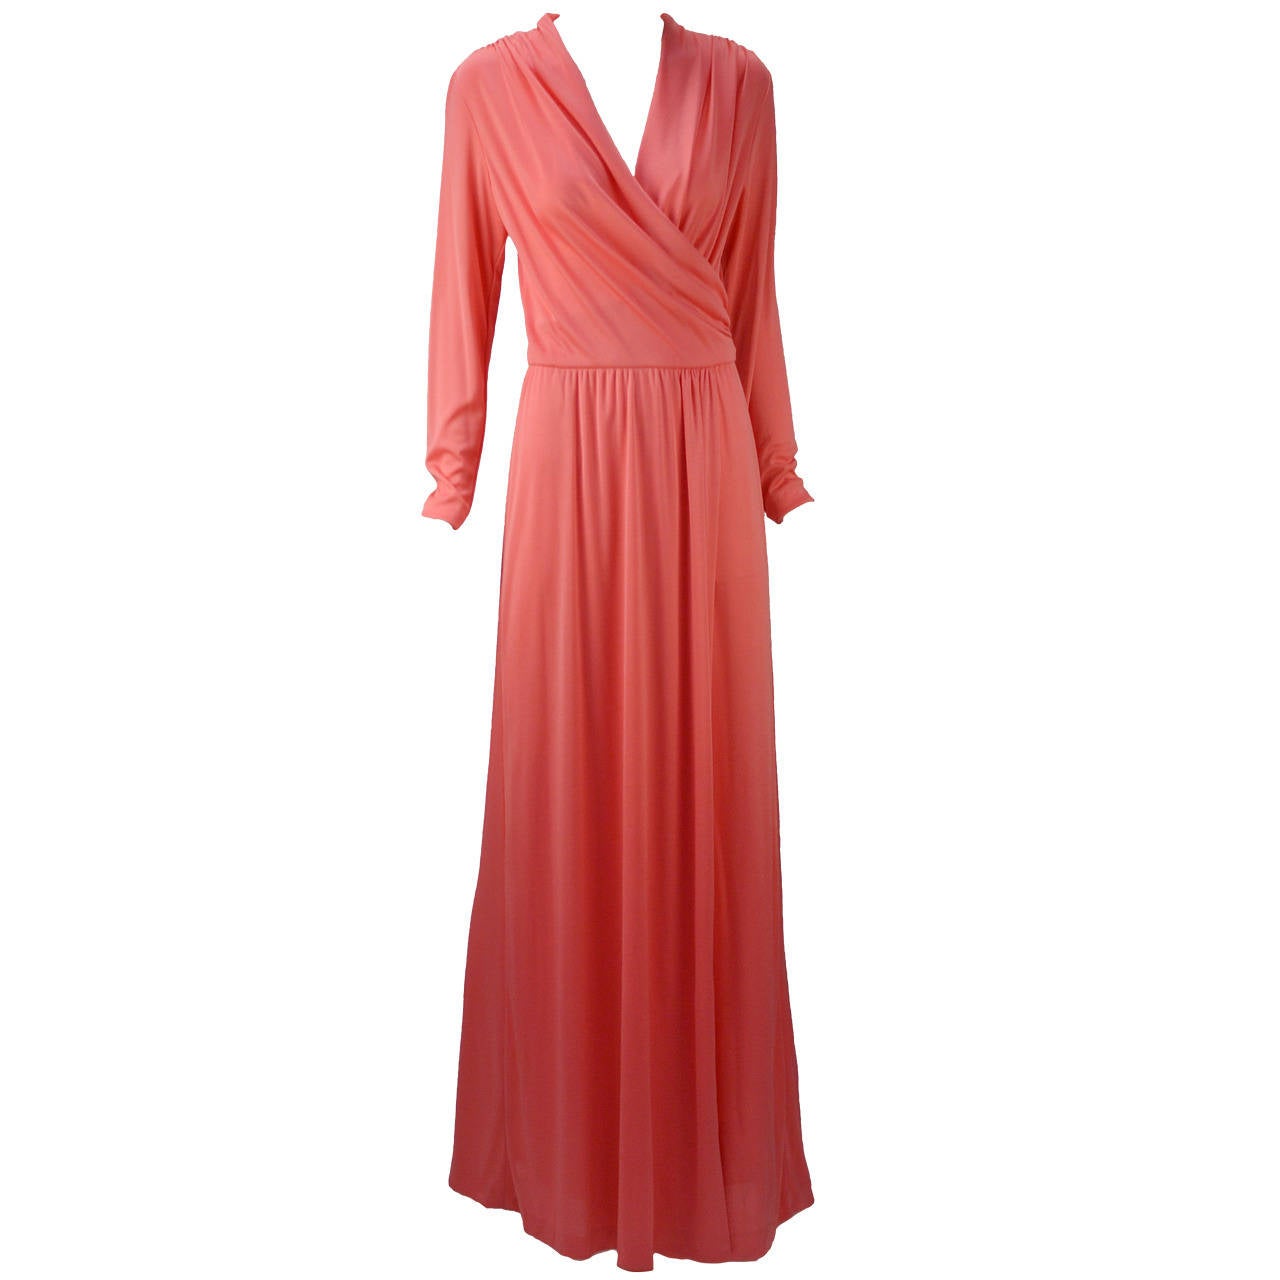 1970s Joy Stevens Coral Pink Maxi Dress For Sale at 1stdibs